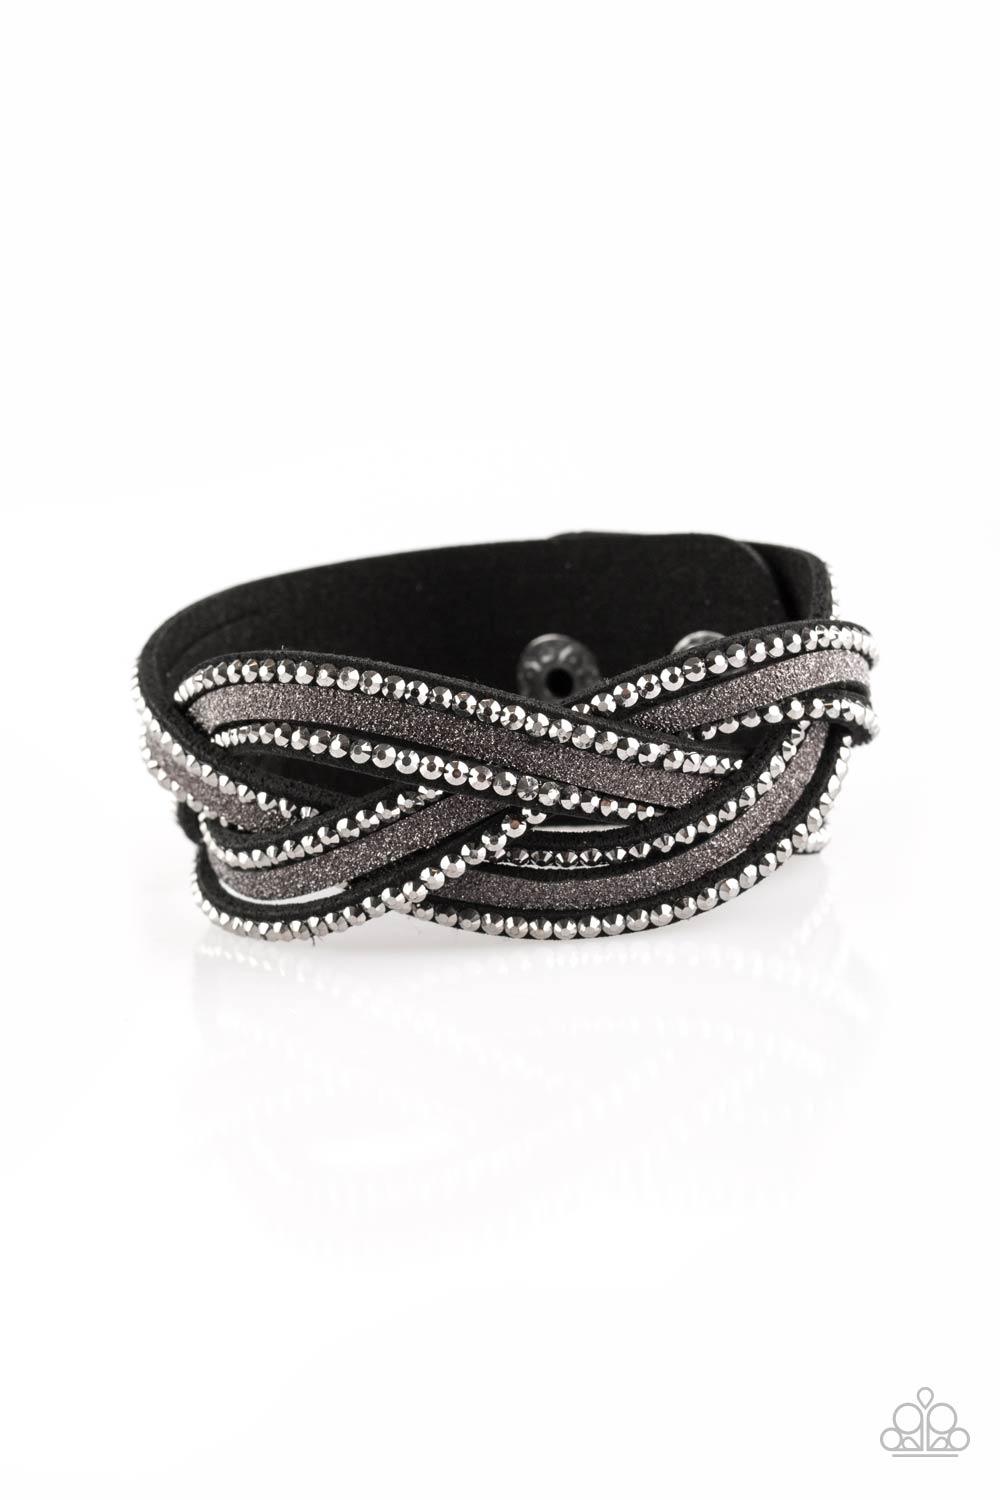 925 Silver Black Beaded Bracelets for Girlswomen 2 Design Options - Etsy